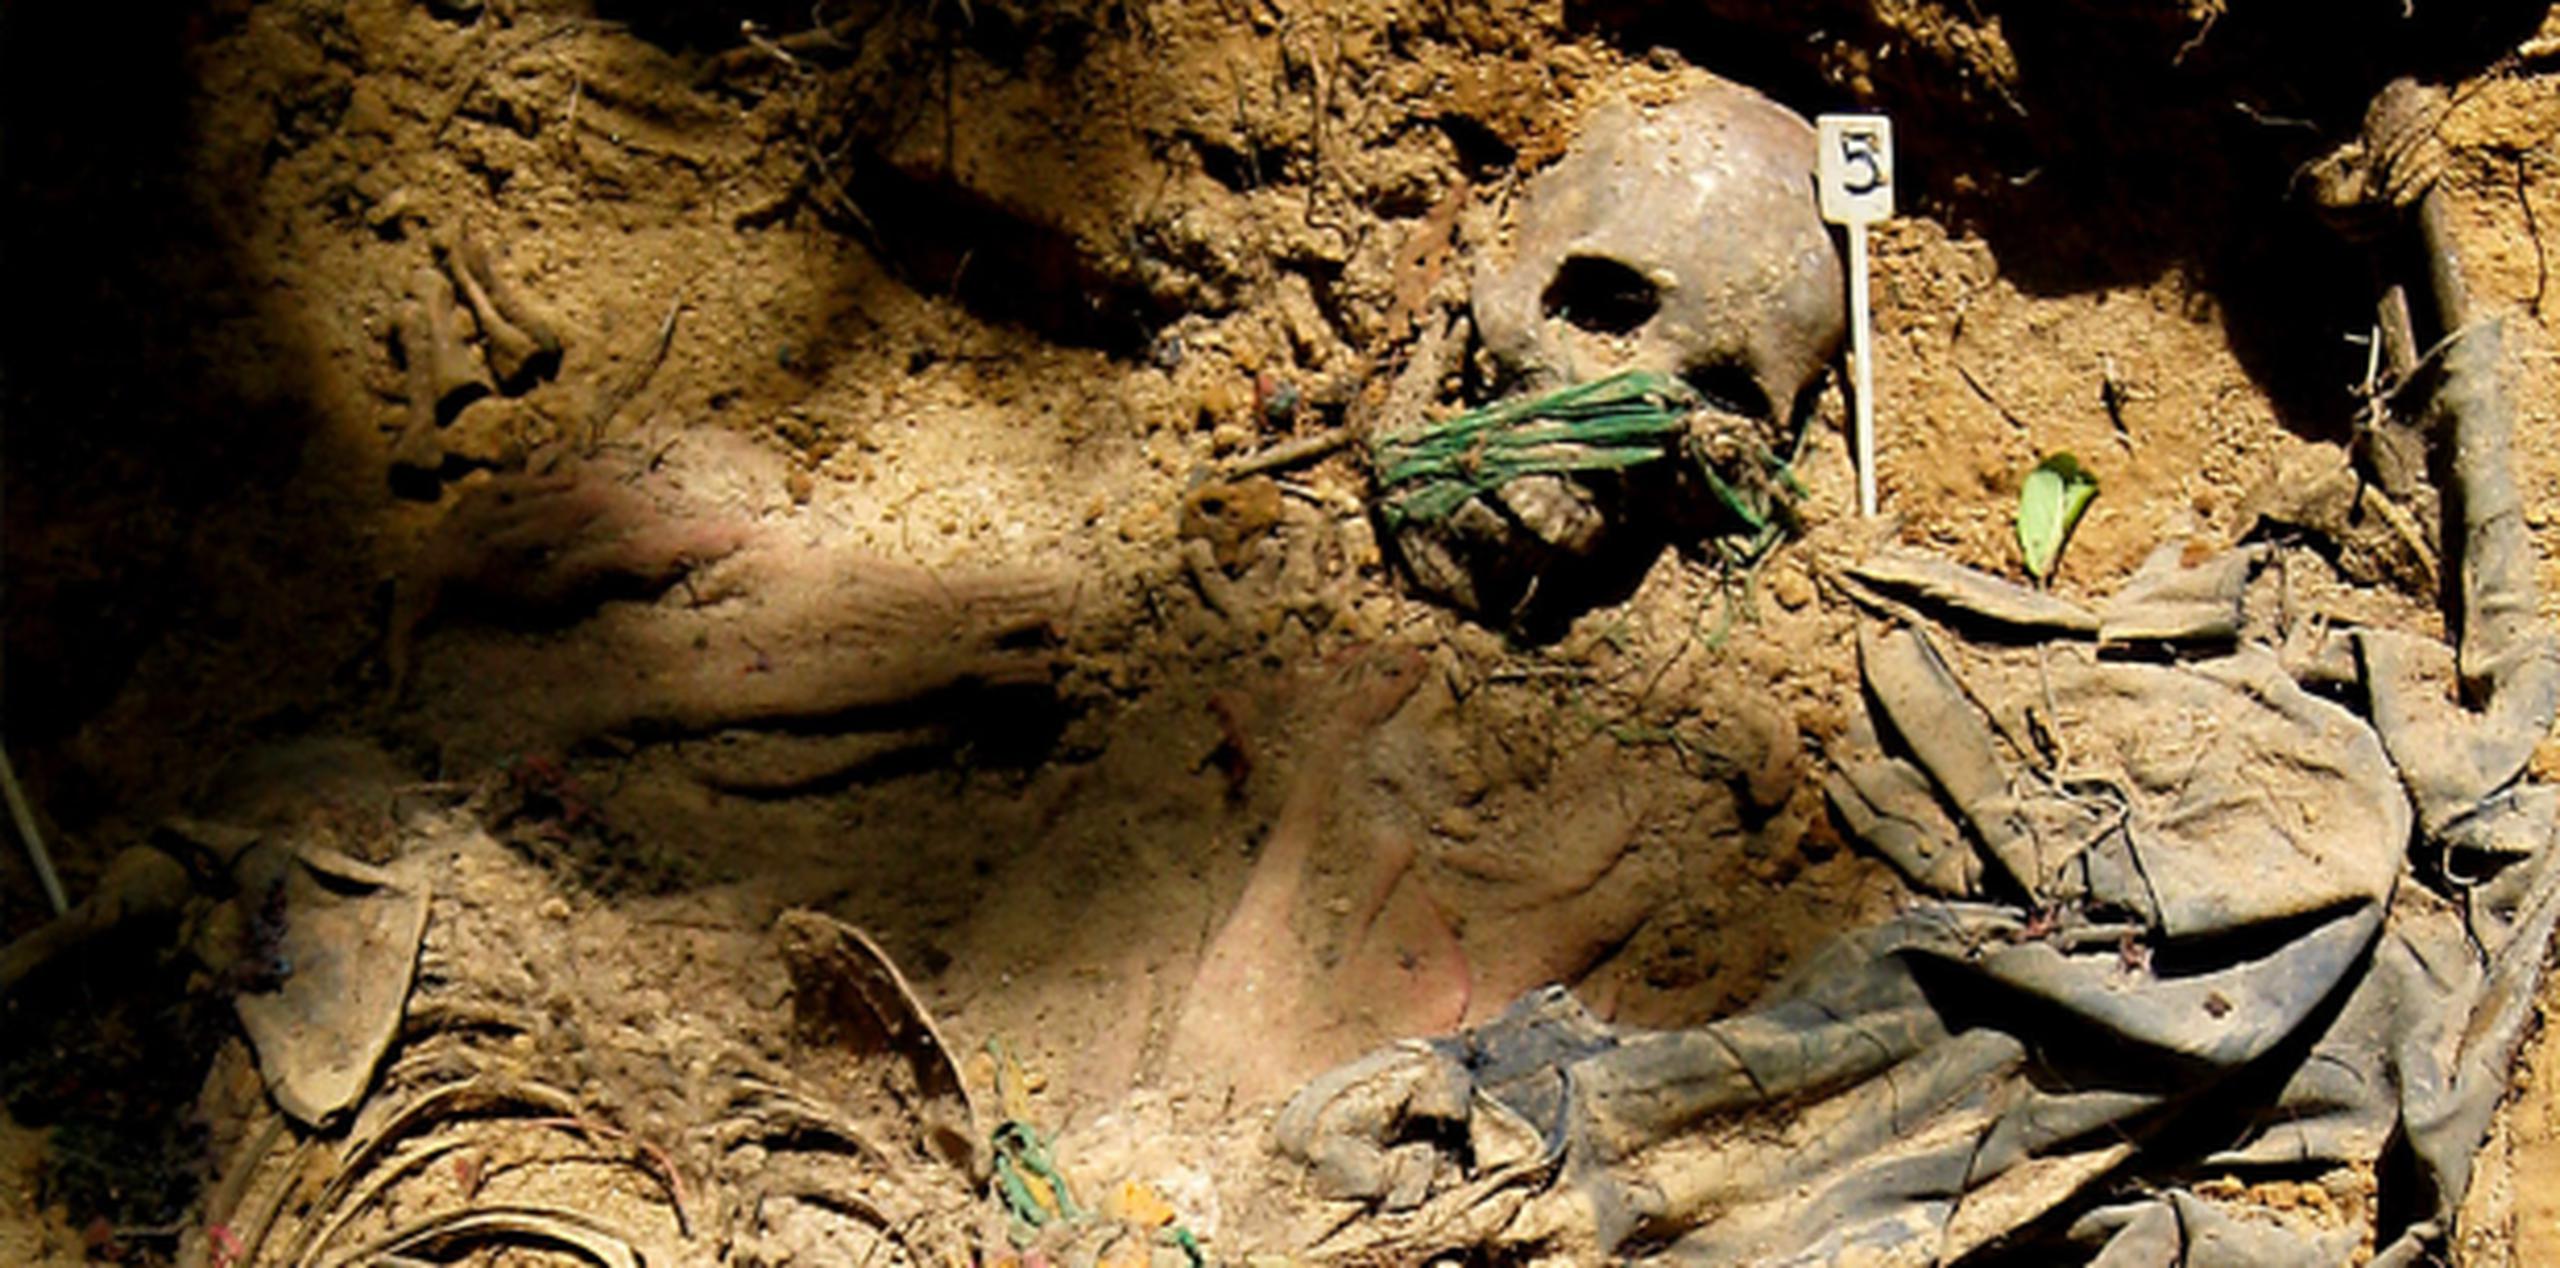 Las autoridades no revelaron quién ni cuando había encontrado los restos humanos. (Archivo)